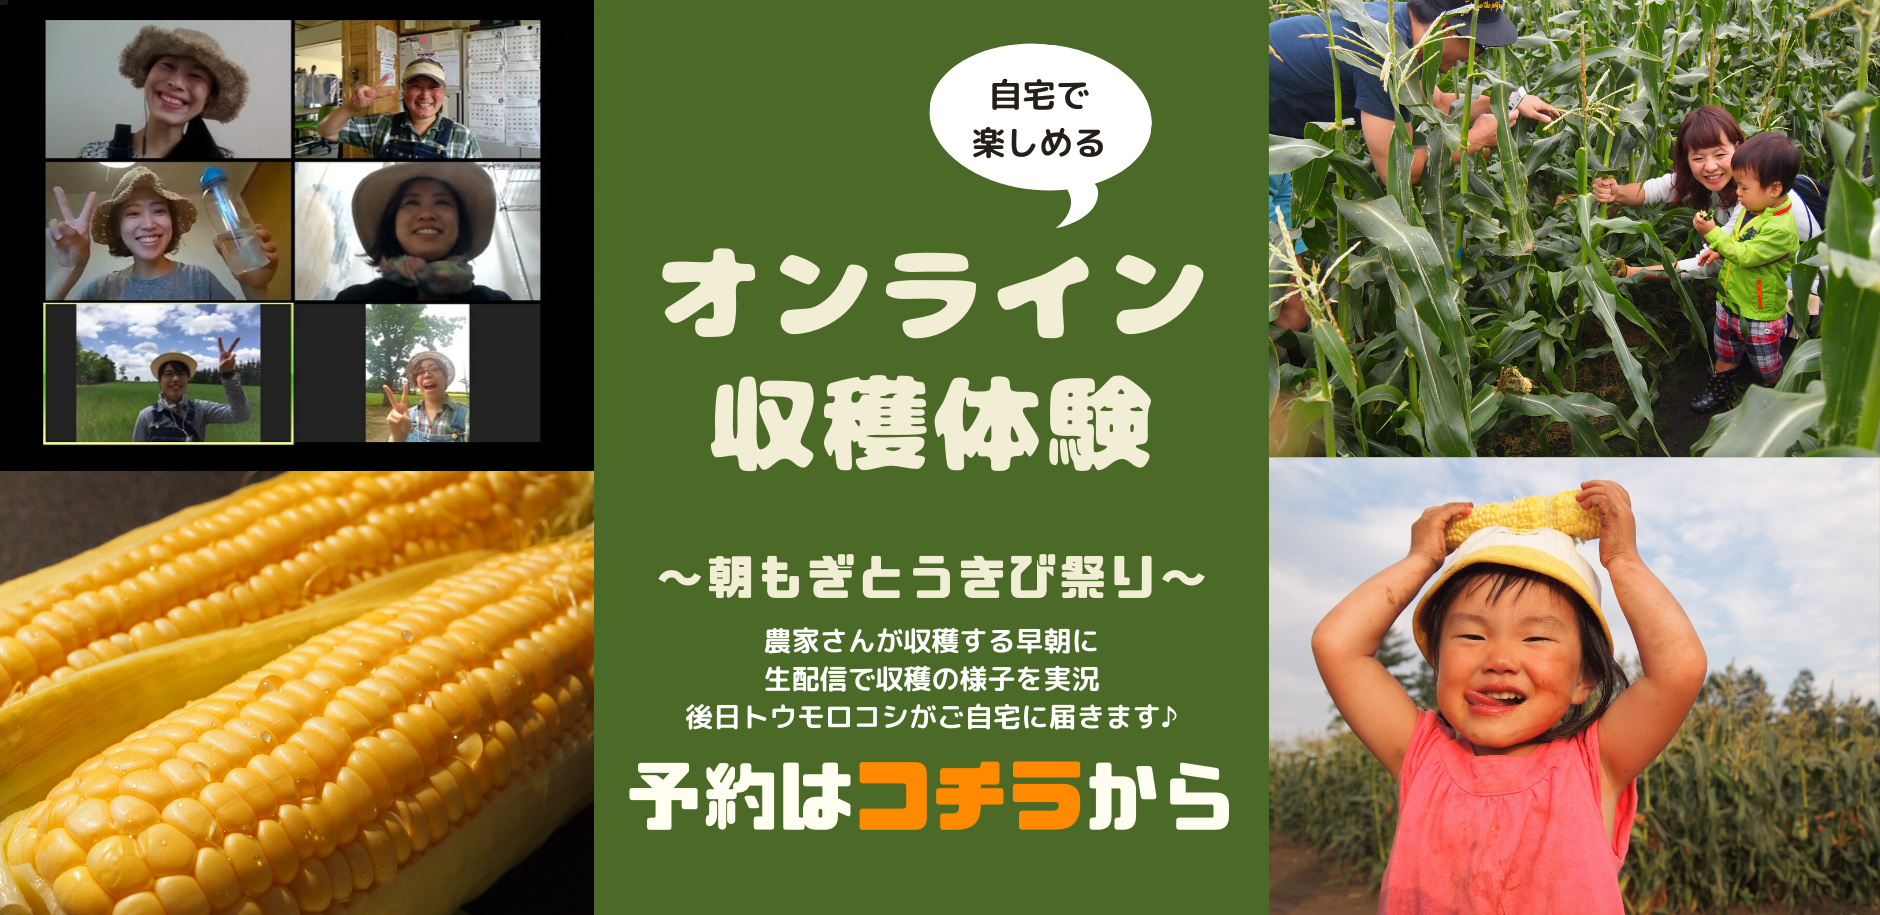 【ライブ配信】オンライン収穫体験?〜朝もぎとうきび祭り〜